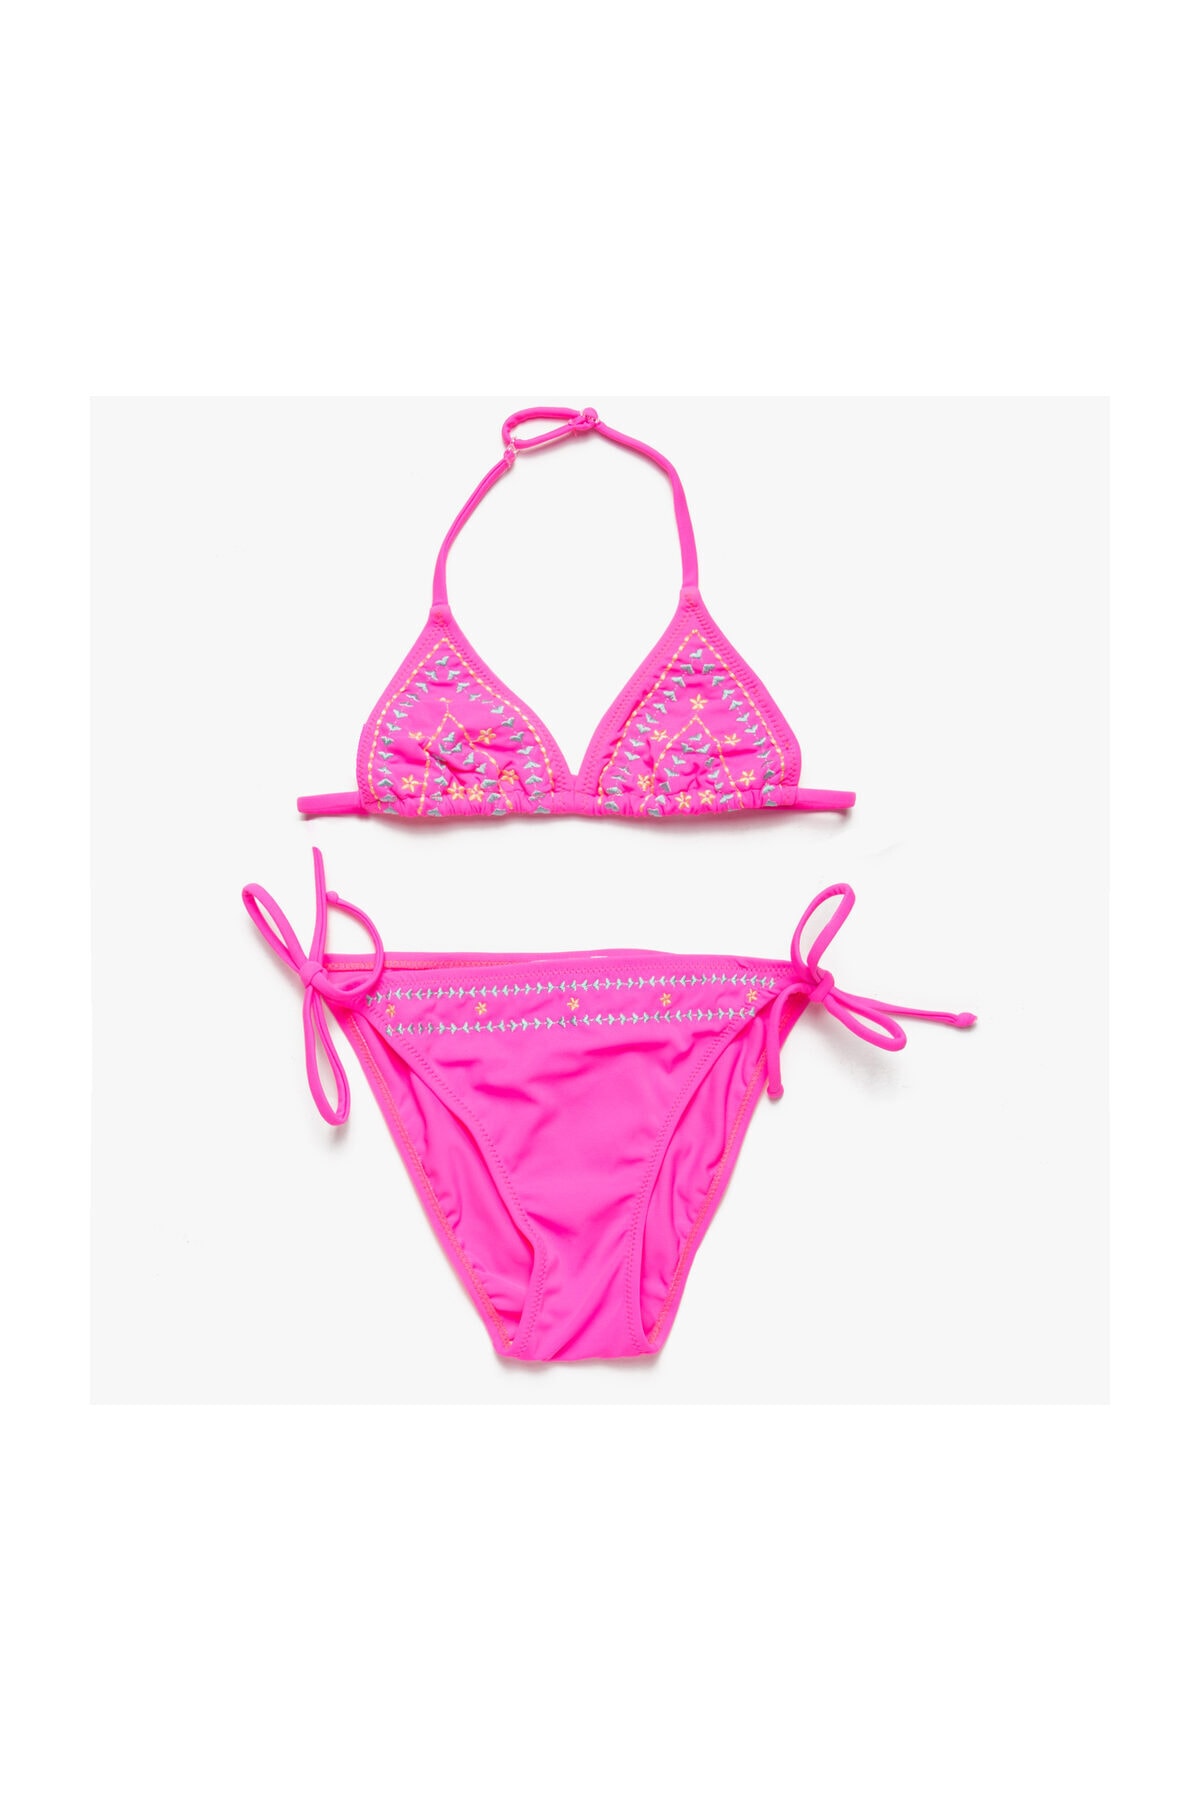 Koton Fuchsia Girls' Bikini Top